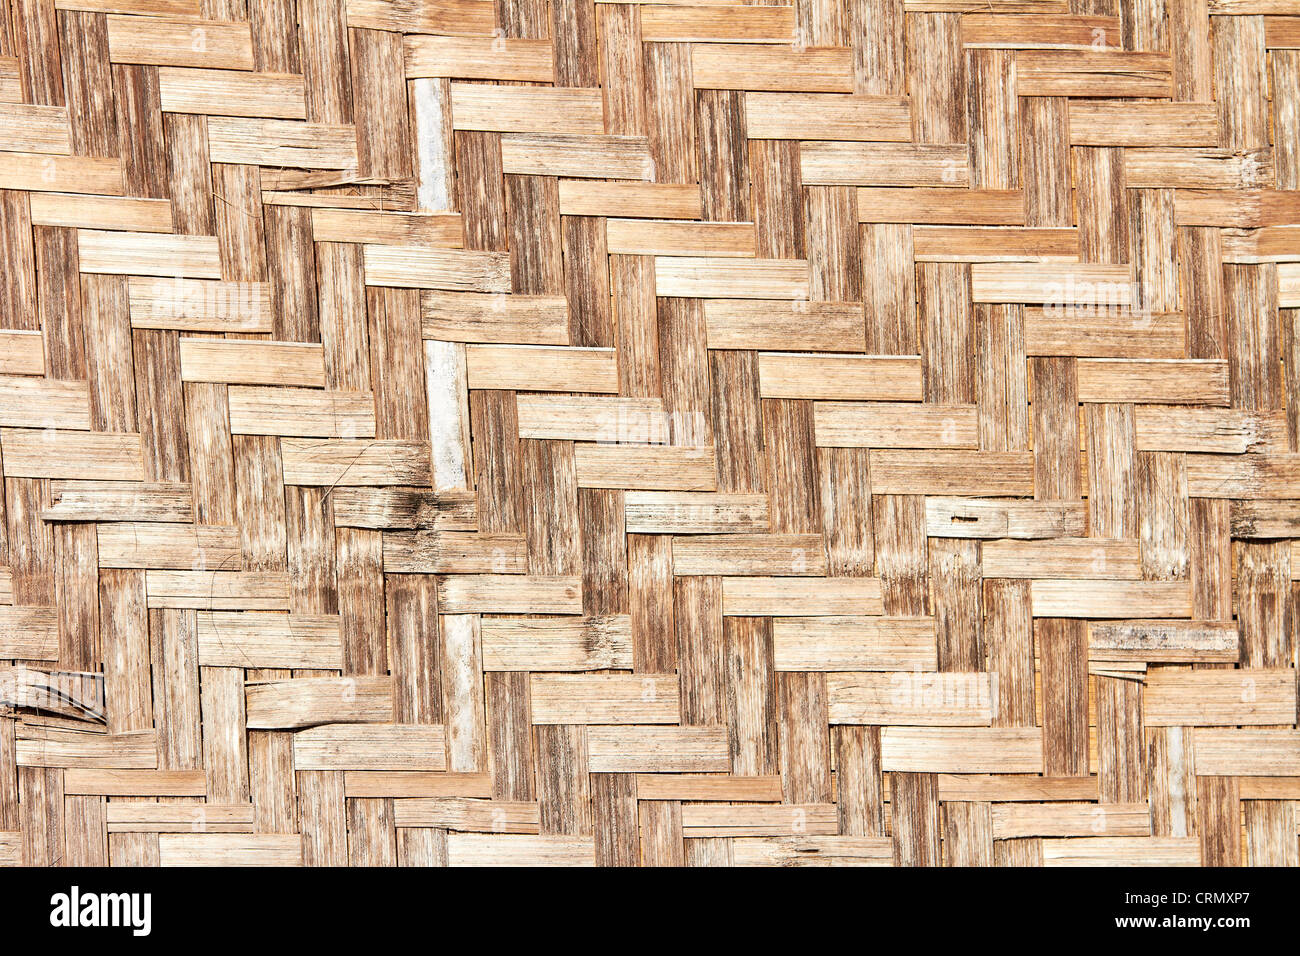 Detalle de la estera, tejida con paja de hoja de palma natural,  entrelazada, según la tradición indígena en Brasil Fotografía de stock -  Alamy